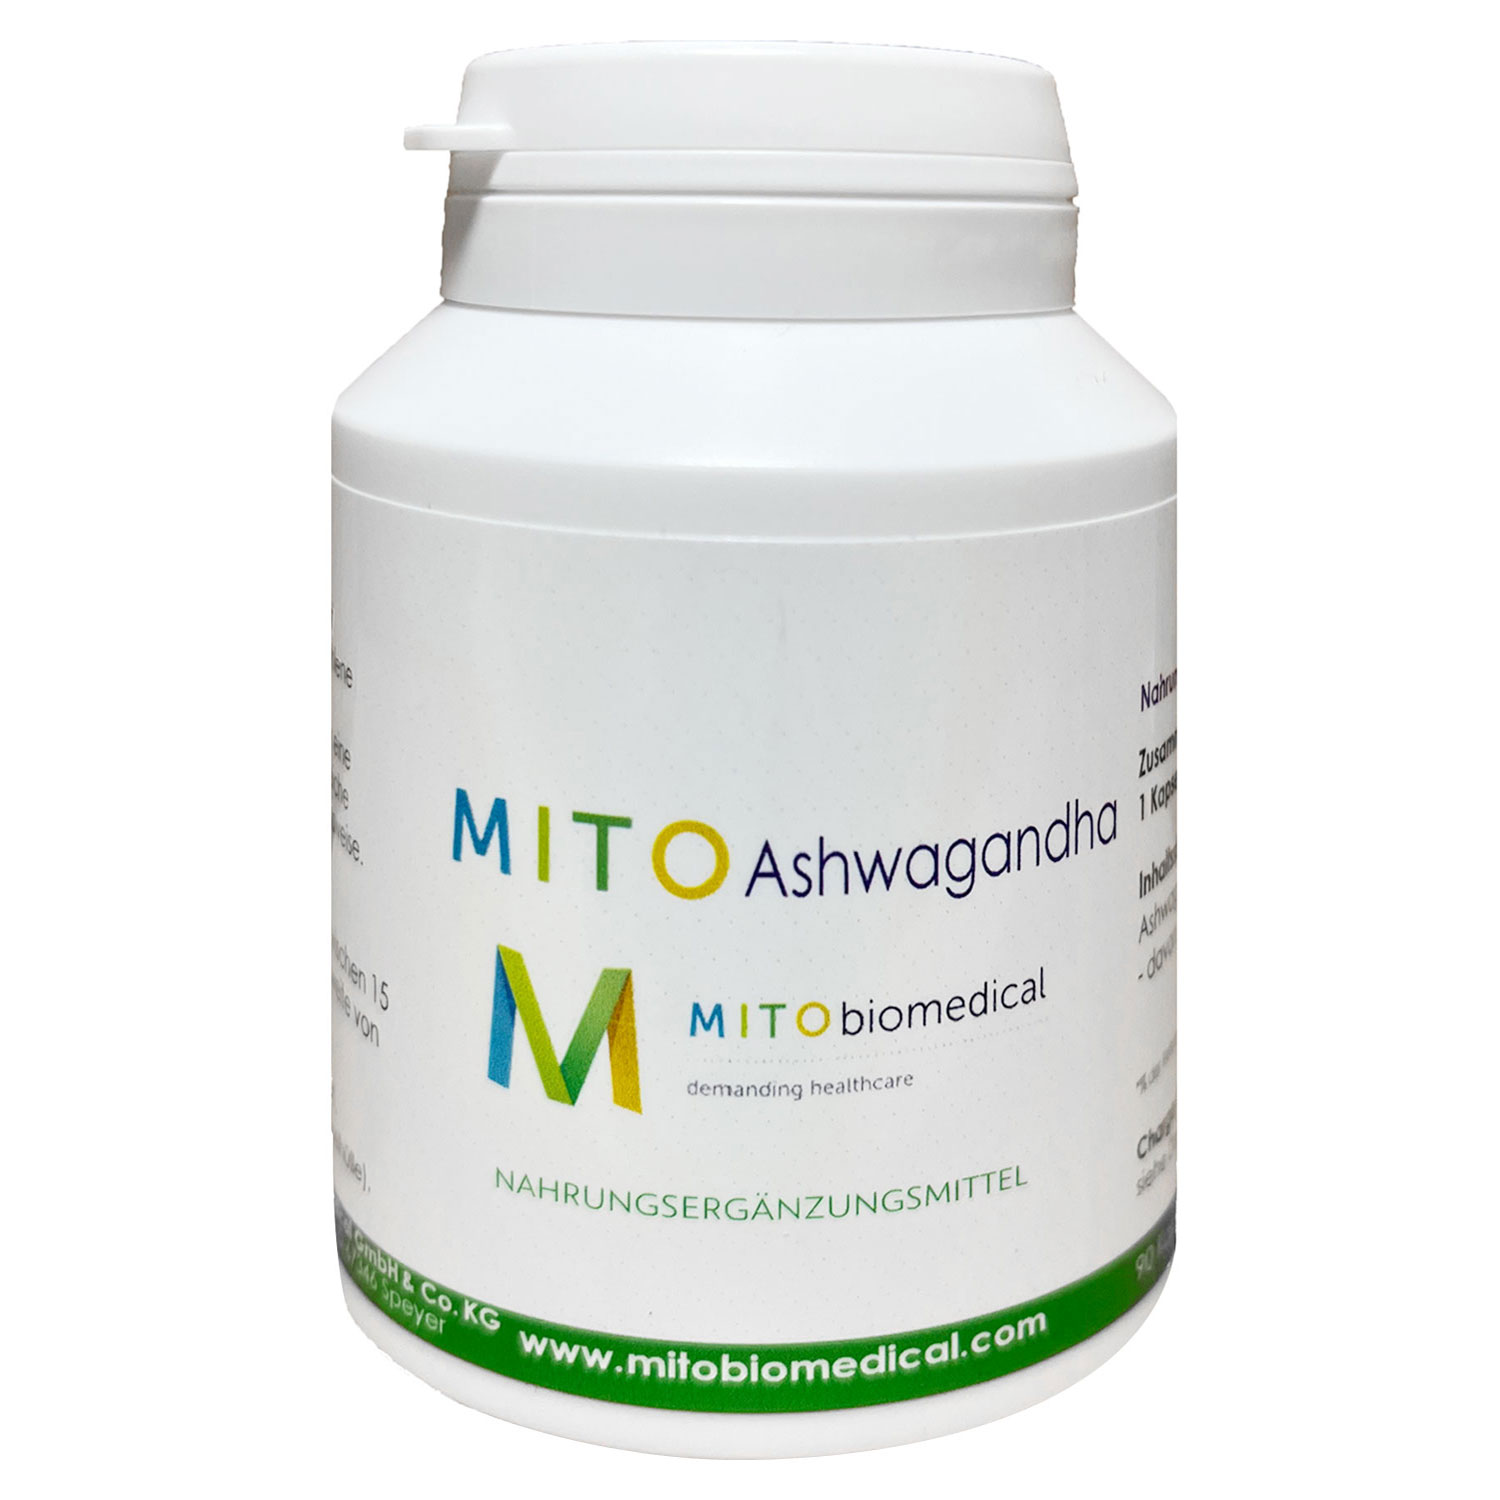 MITOAshwagandha von Mitobiomedical - 90 Kapseln